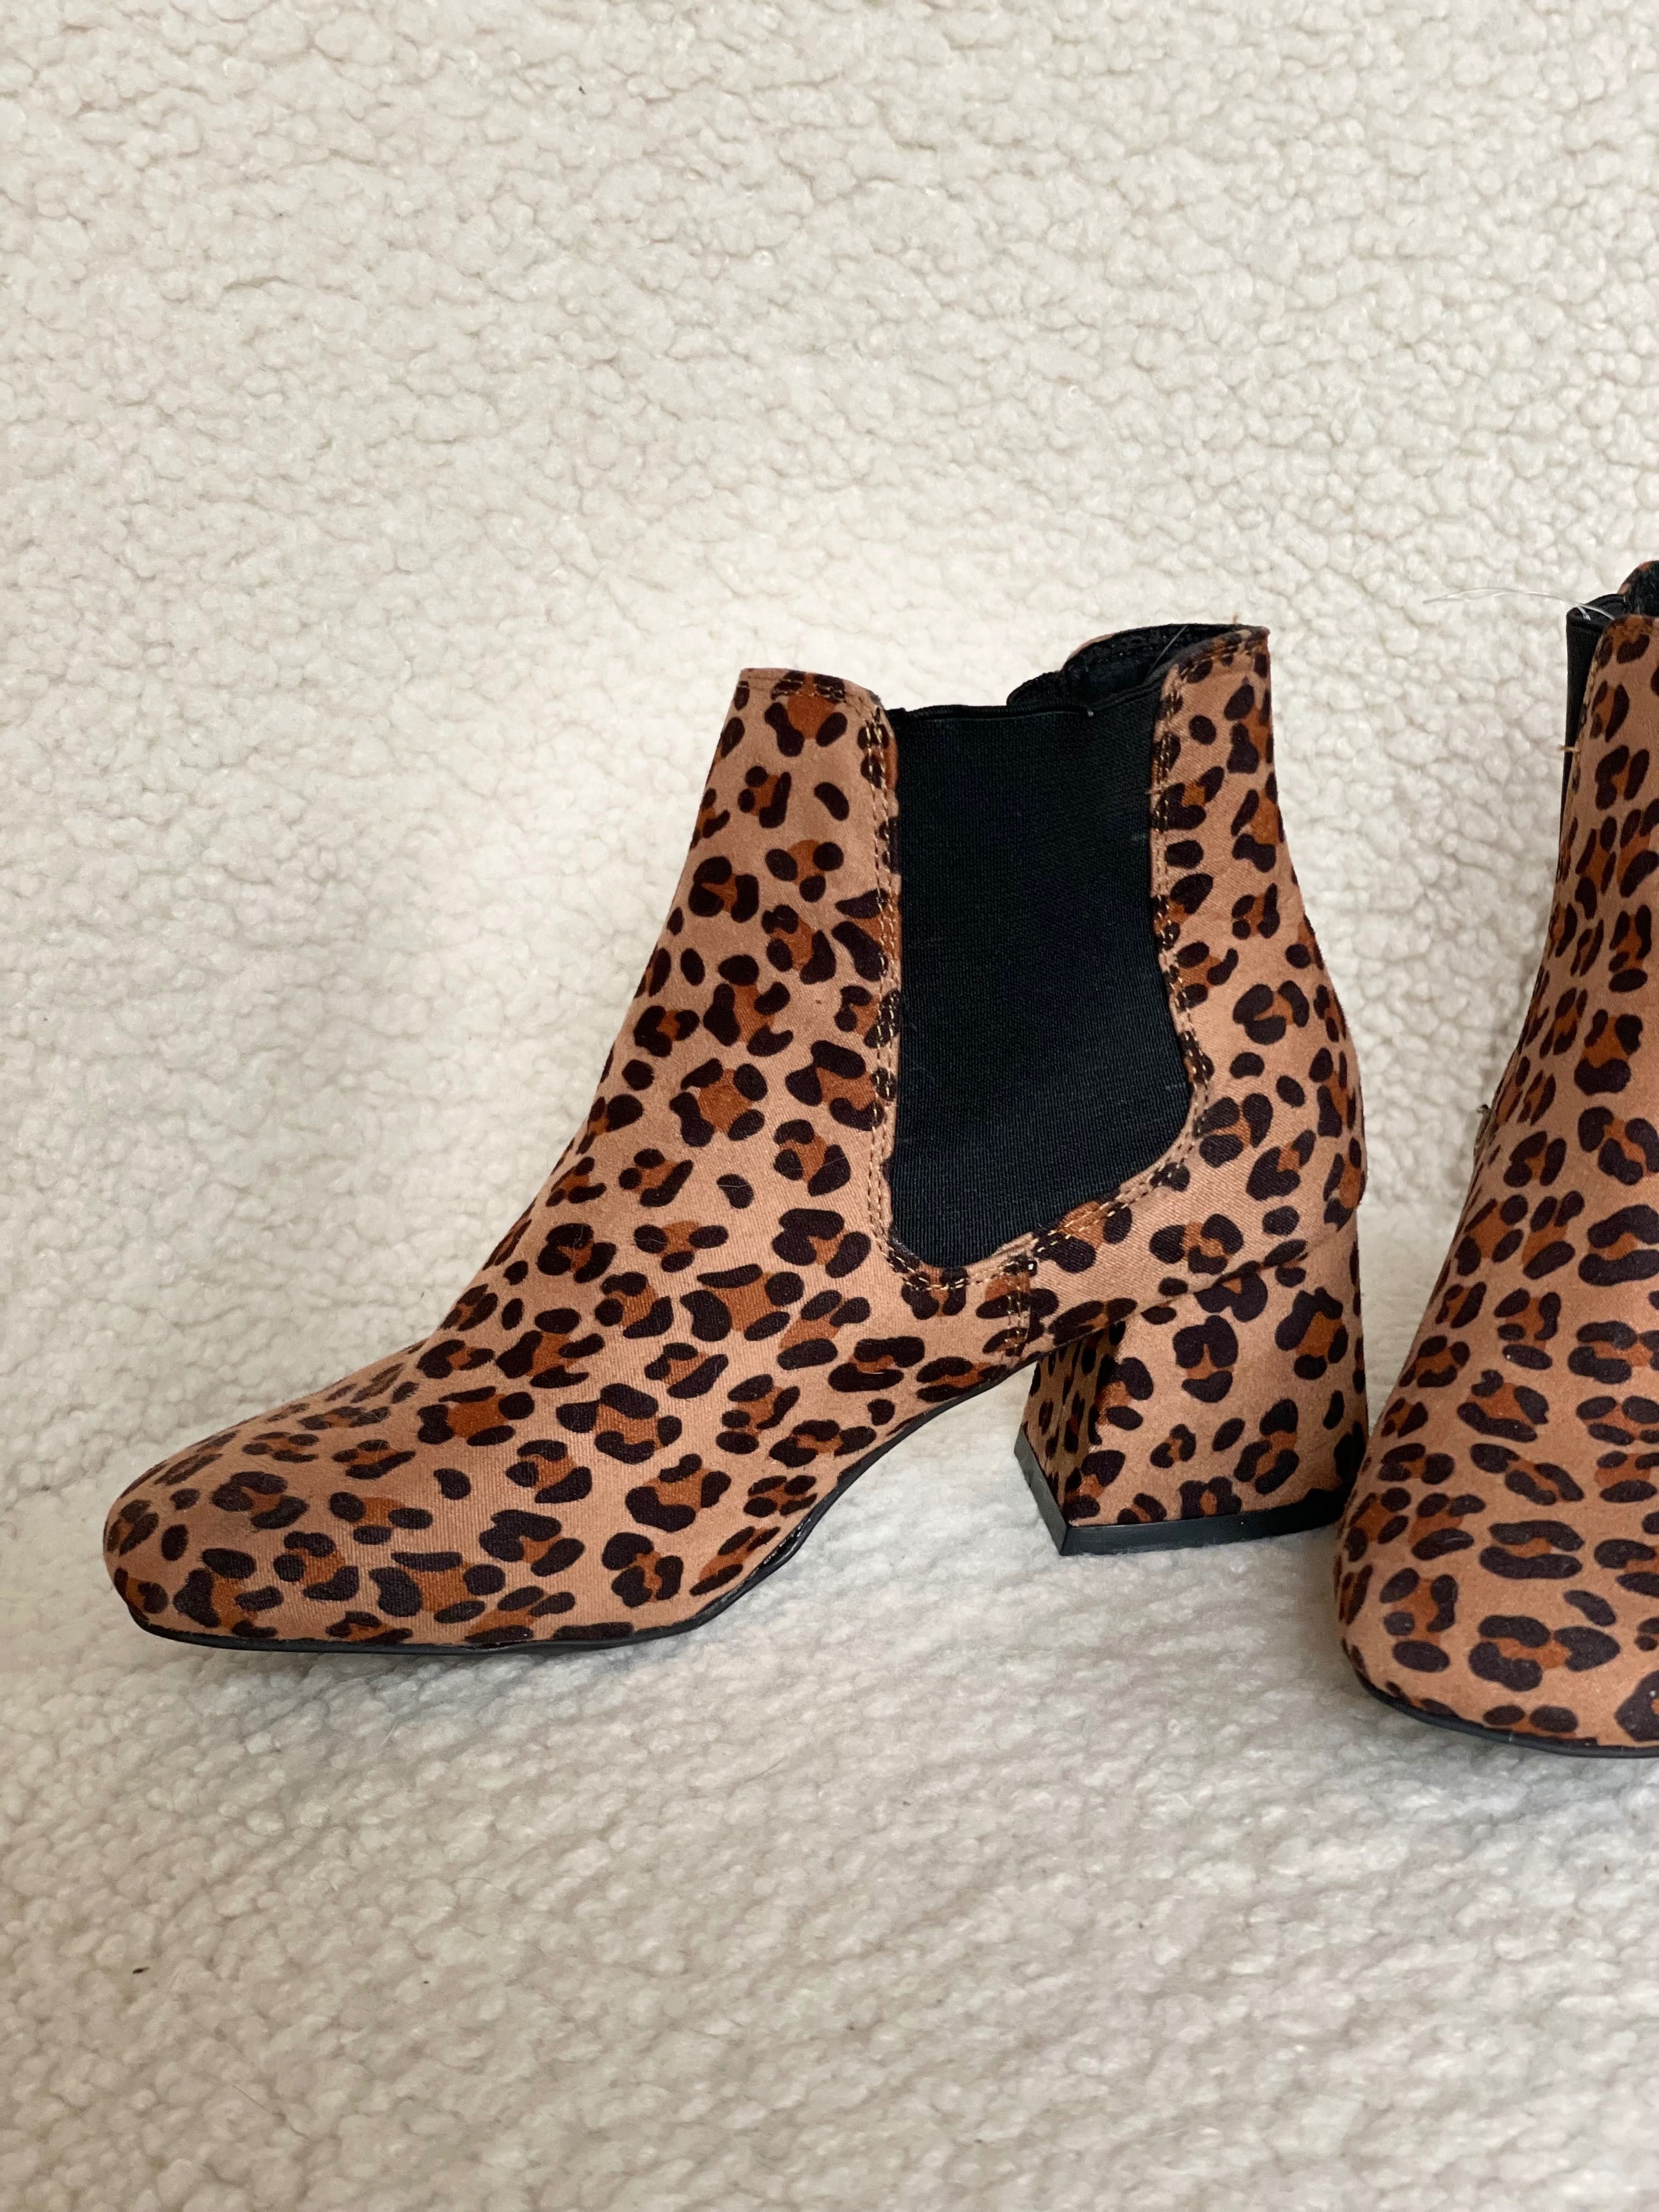 Ботильоны ботинки полуботинки леопардовые 37 размер челси